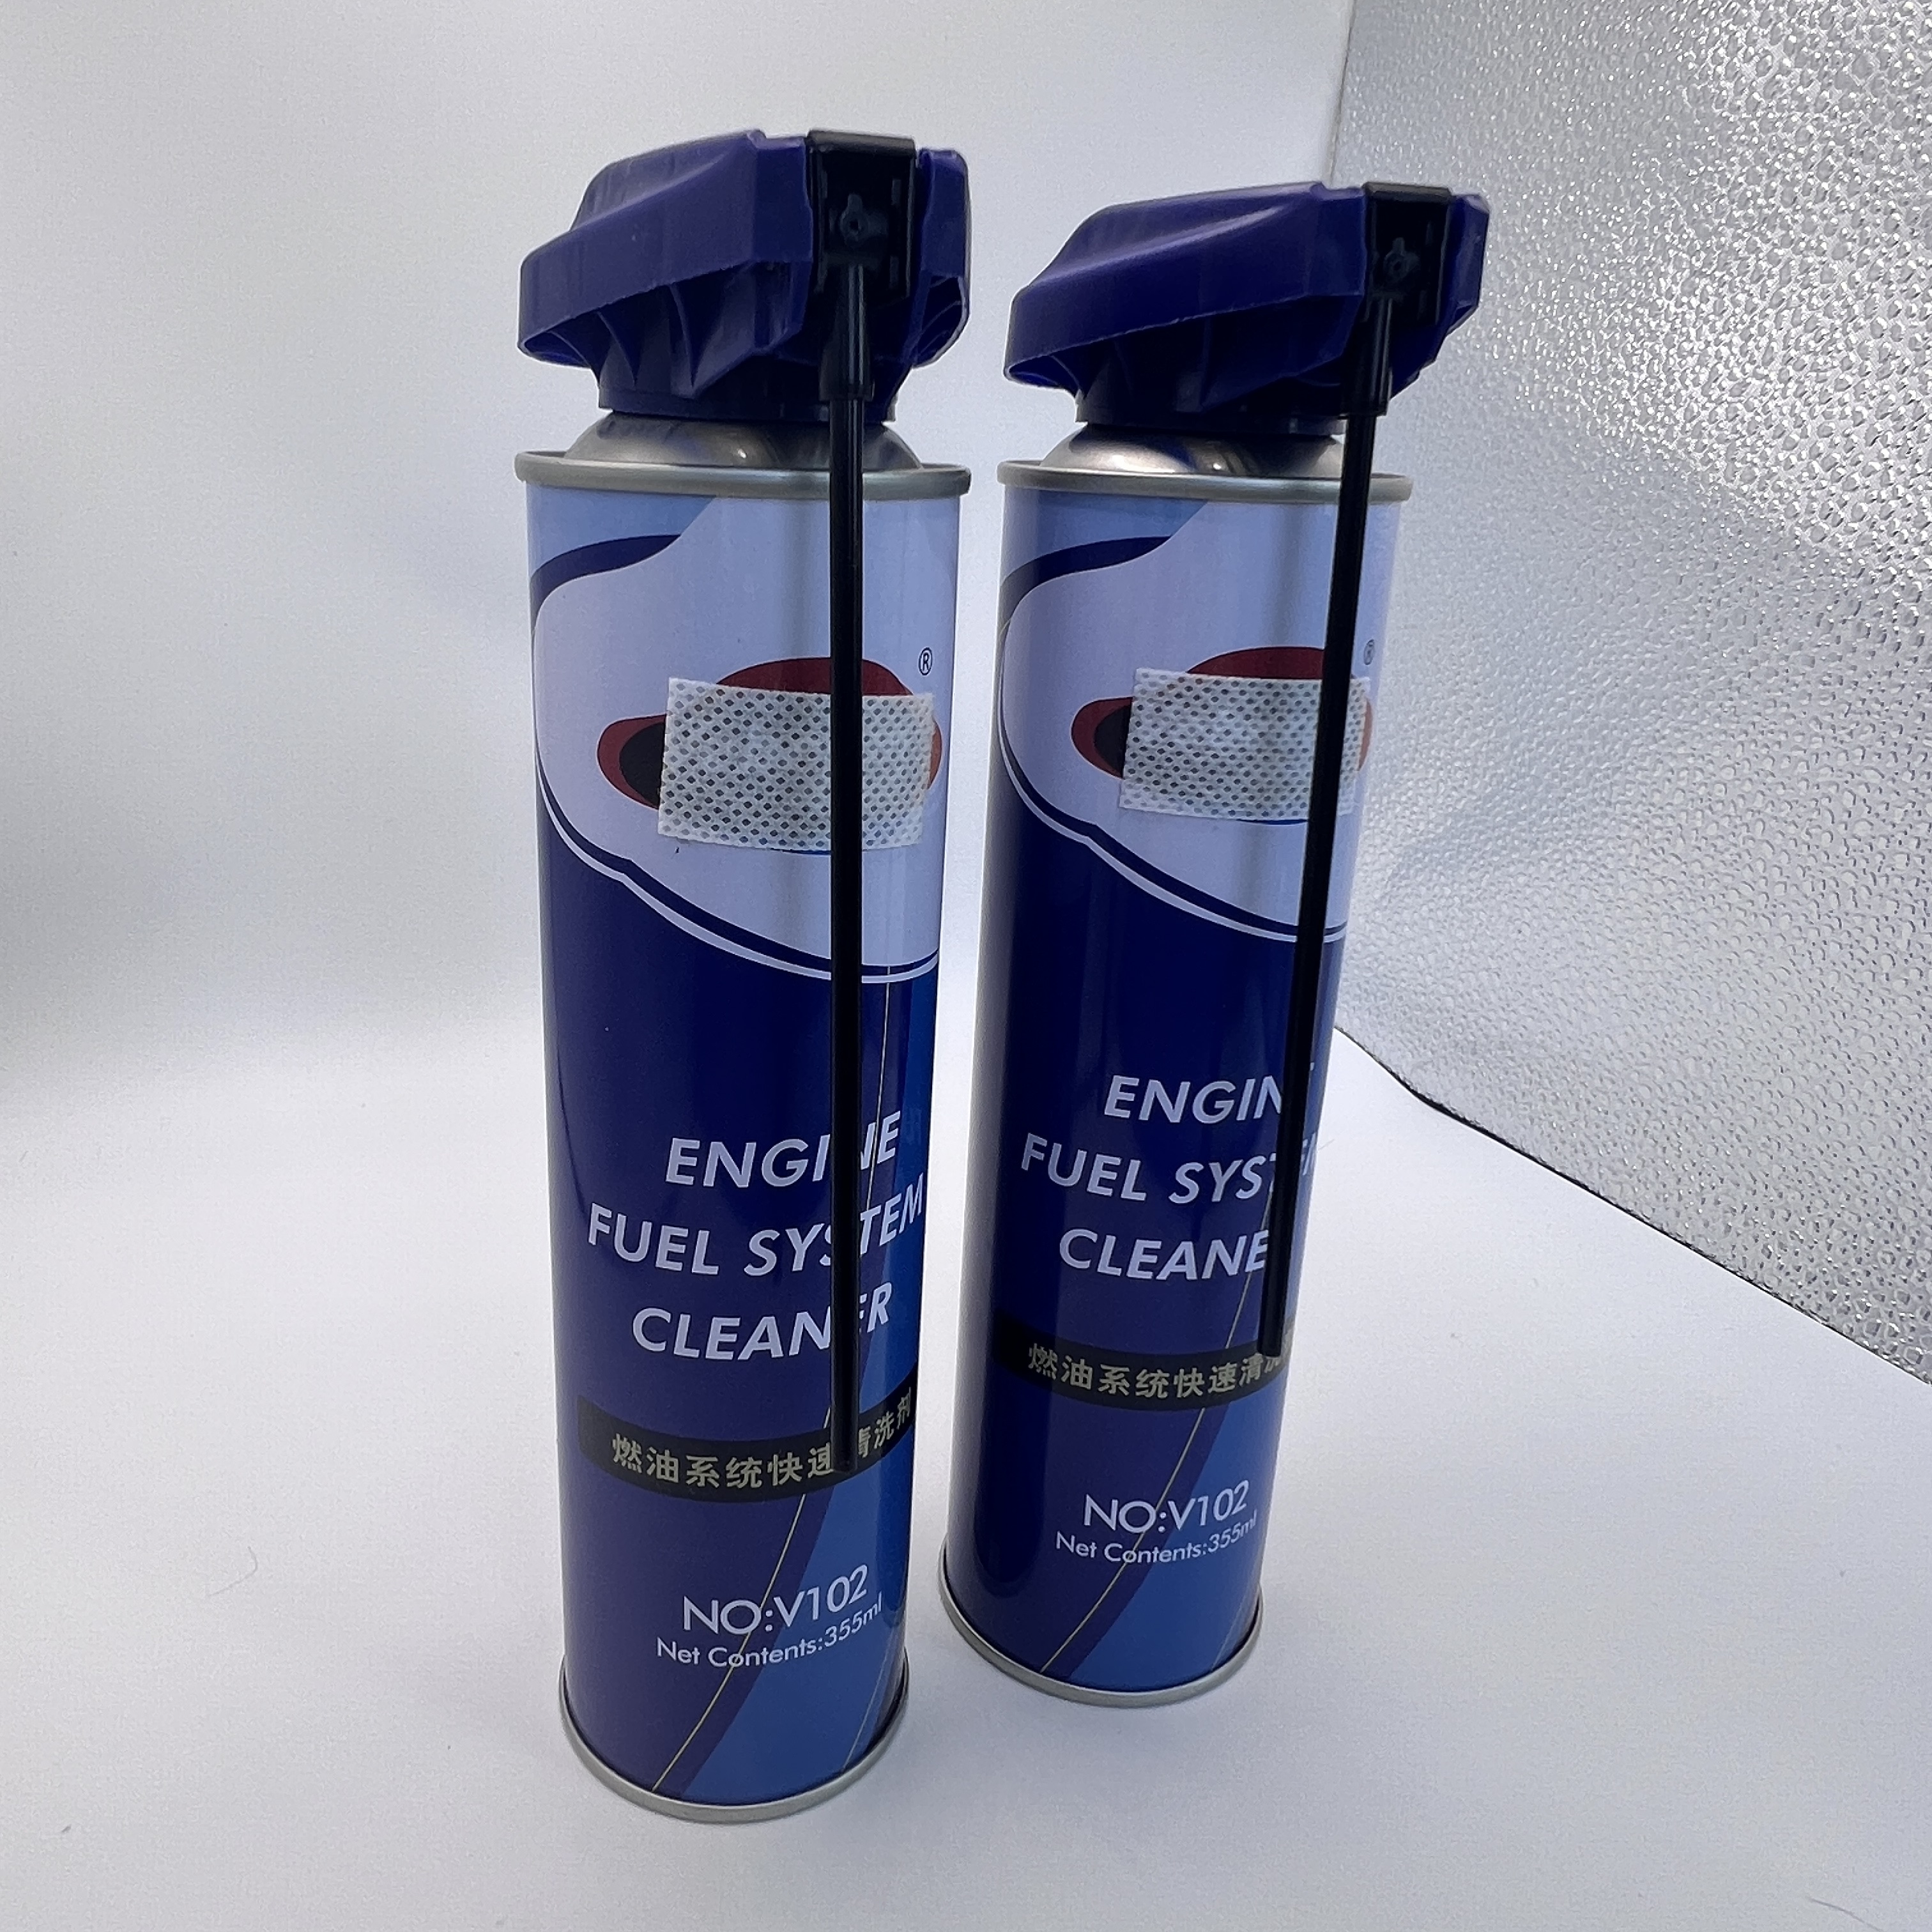 Kıdemli anti -aerosol sprey valfi - tıkanıkları önlemek için güvenilir bir çözüm